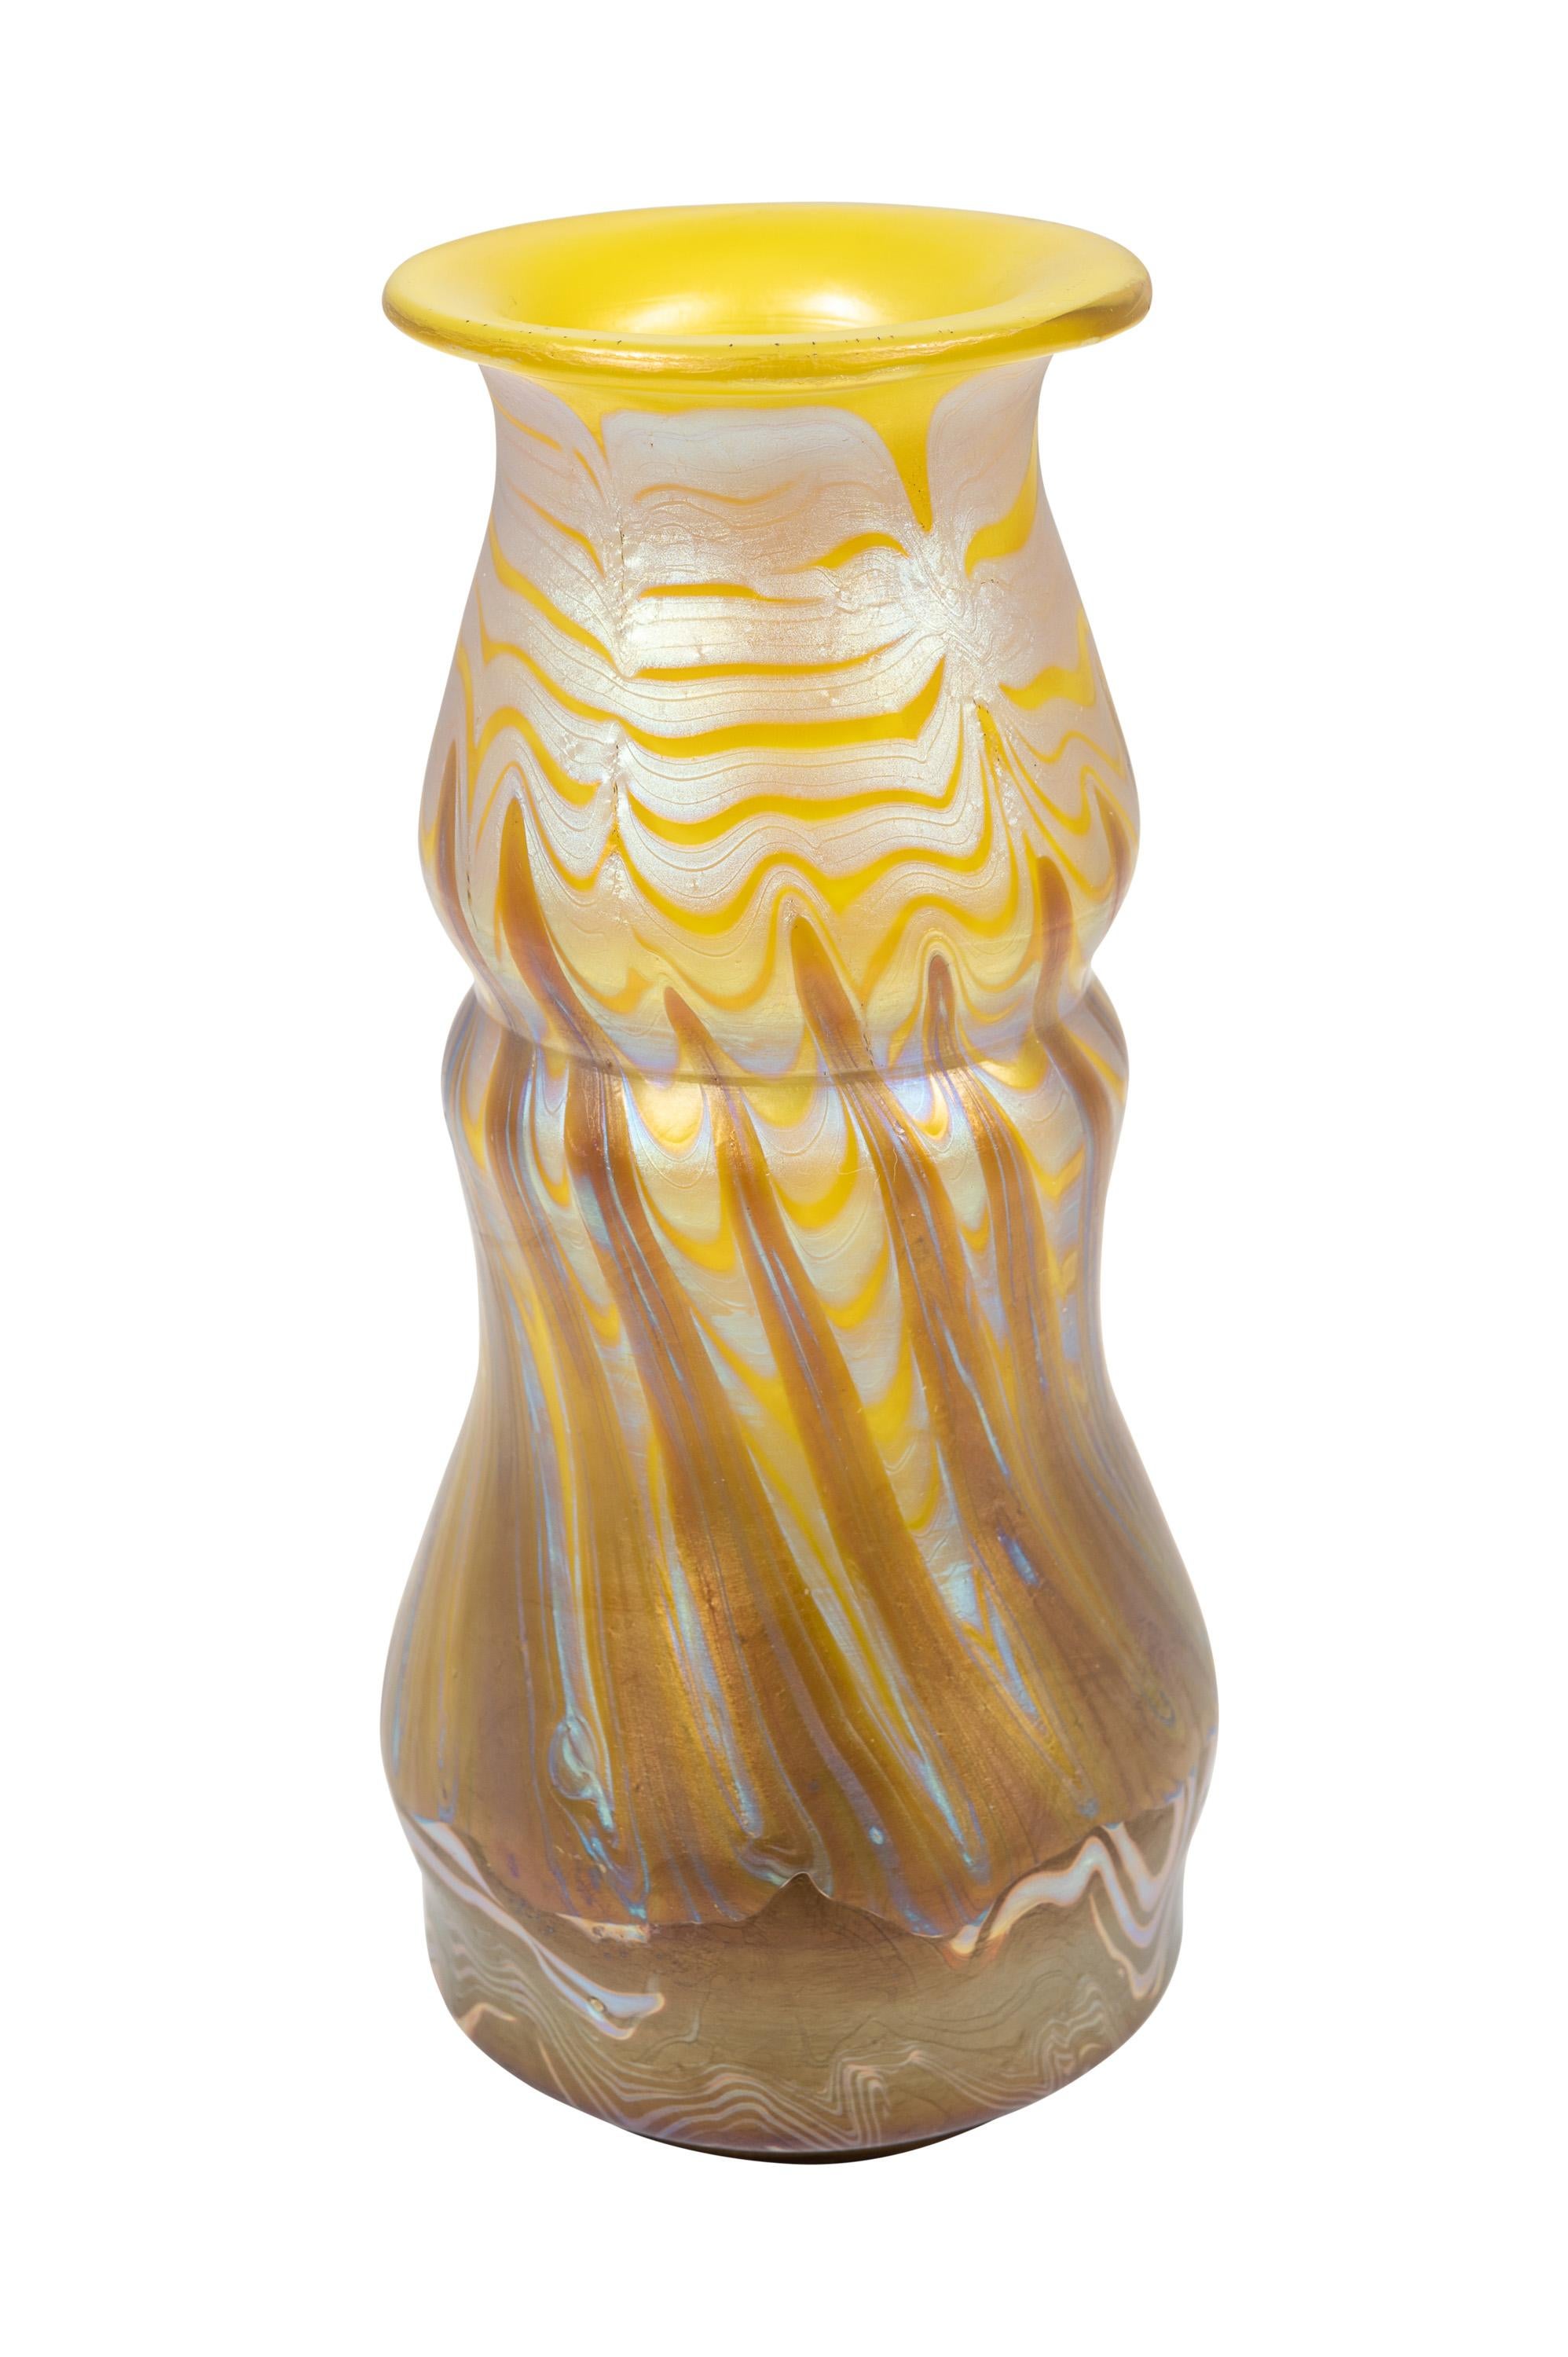 Vase, Johann Loetz Witwe, décoration Phenomen Genre 356, vers 1900, signé

Technique : verre, soufflé au moule et de forme libre, réduit et irisé

Vase signé 